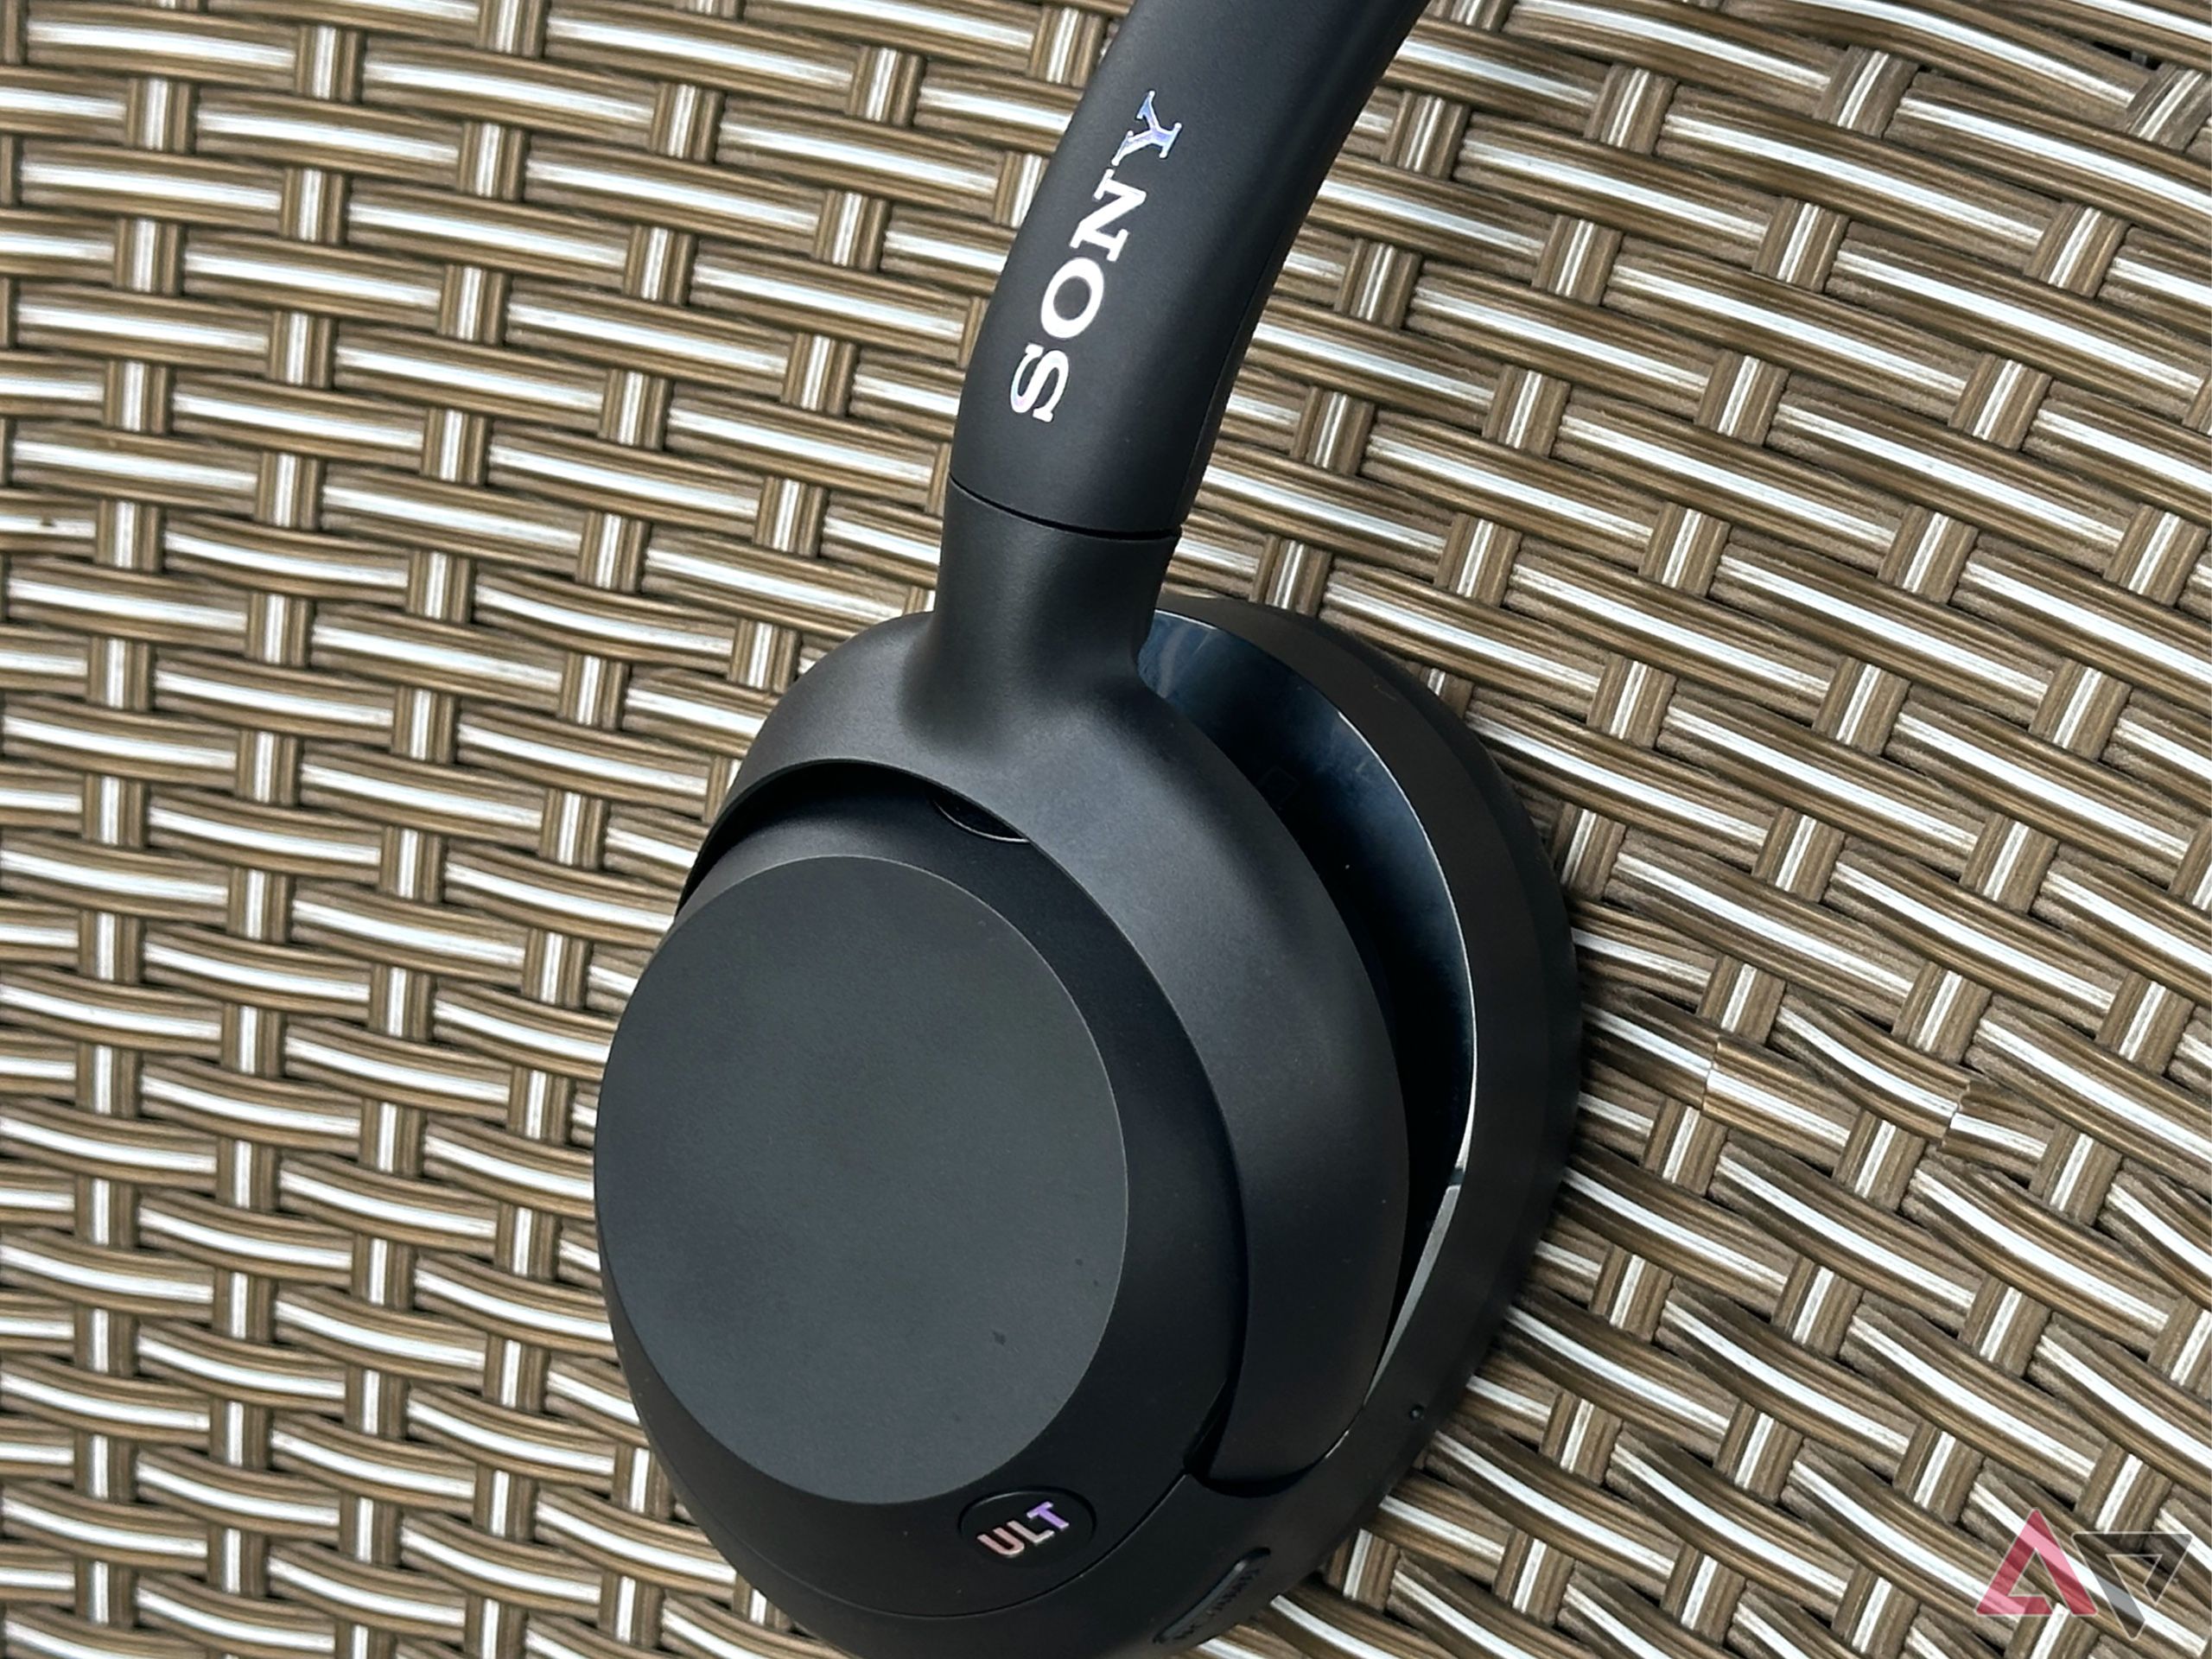 Fones de ouvido Sony Ult Wear em uma cadeira com rede